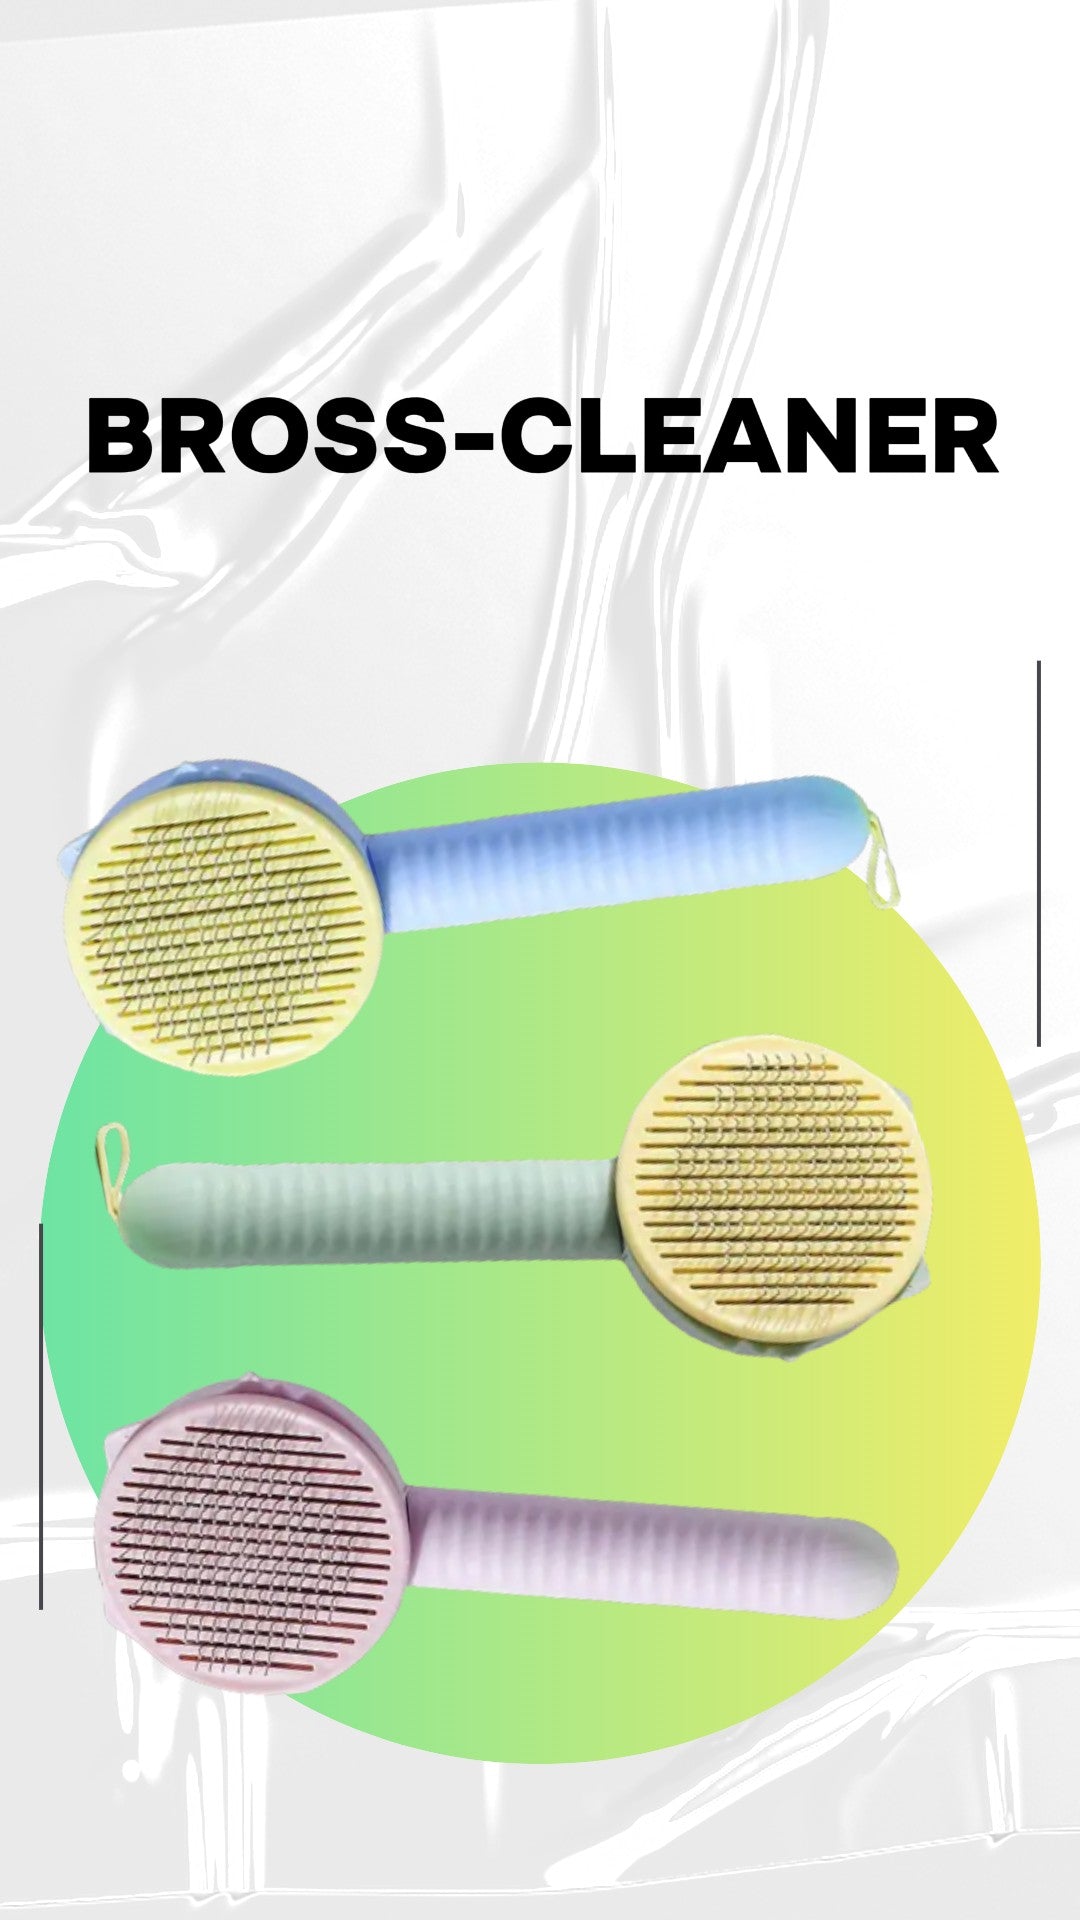 BROSS-CLEANER